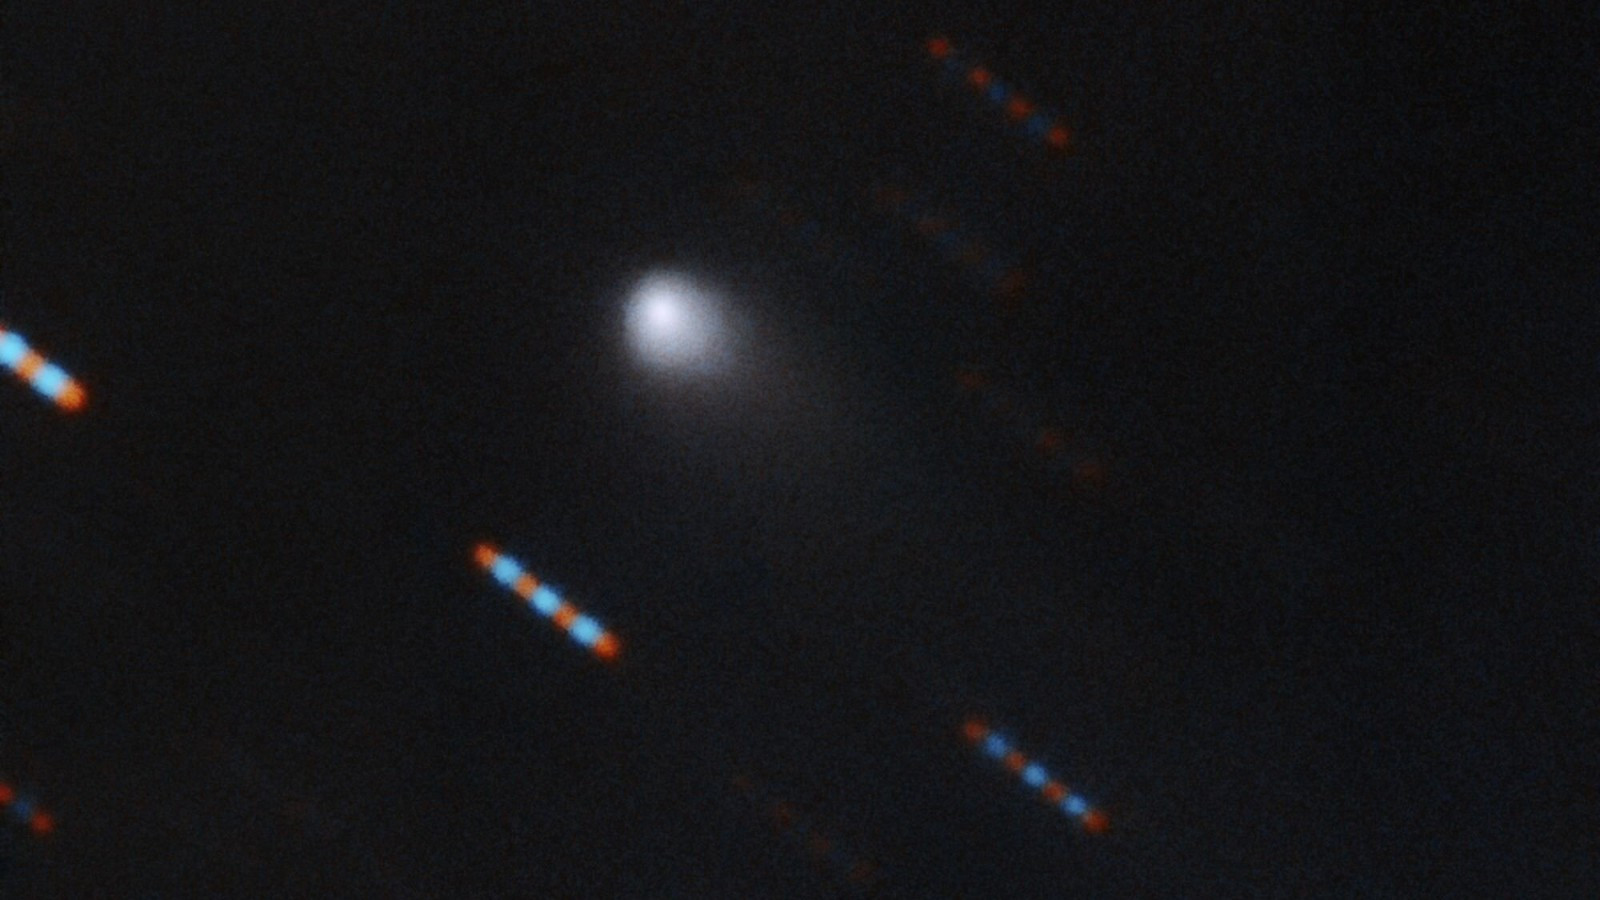 Сделано многоцветное изображение первой межзвездной кометы